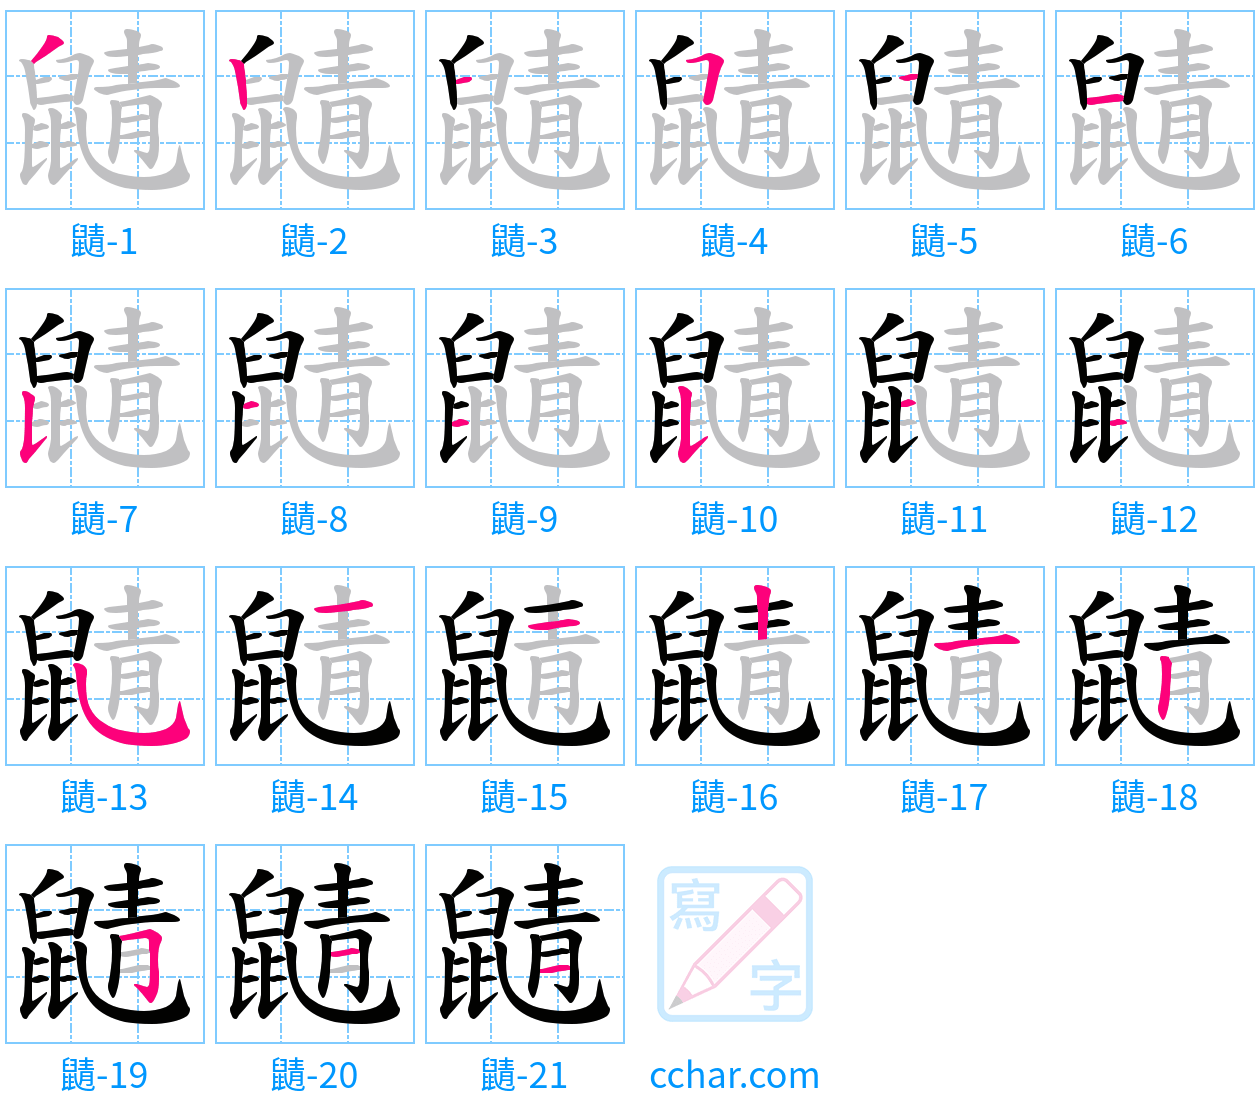 鼱 stroke order step-by-step diagram